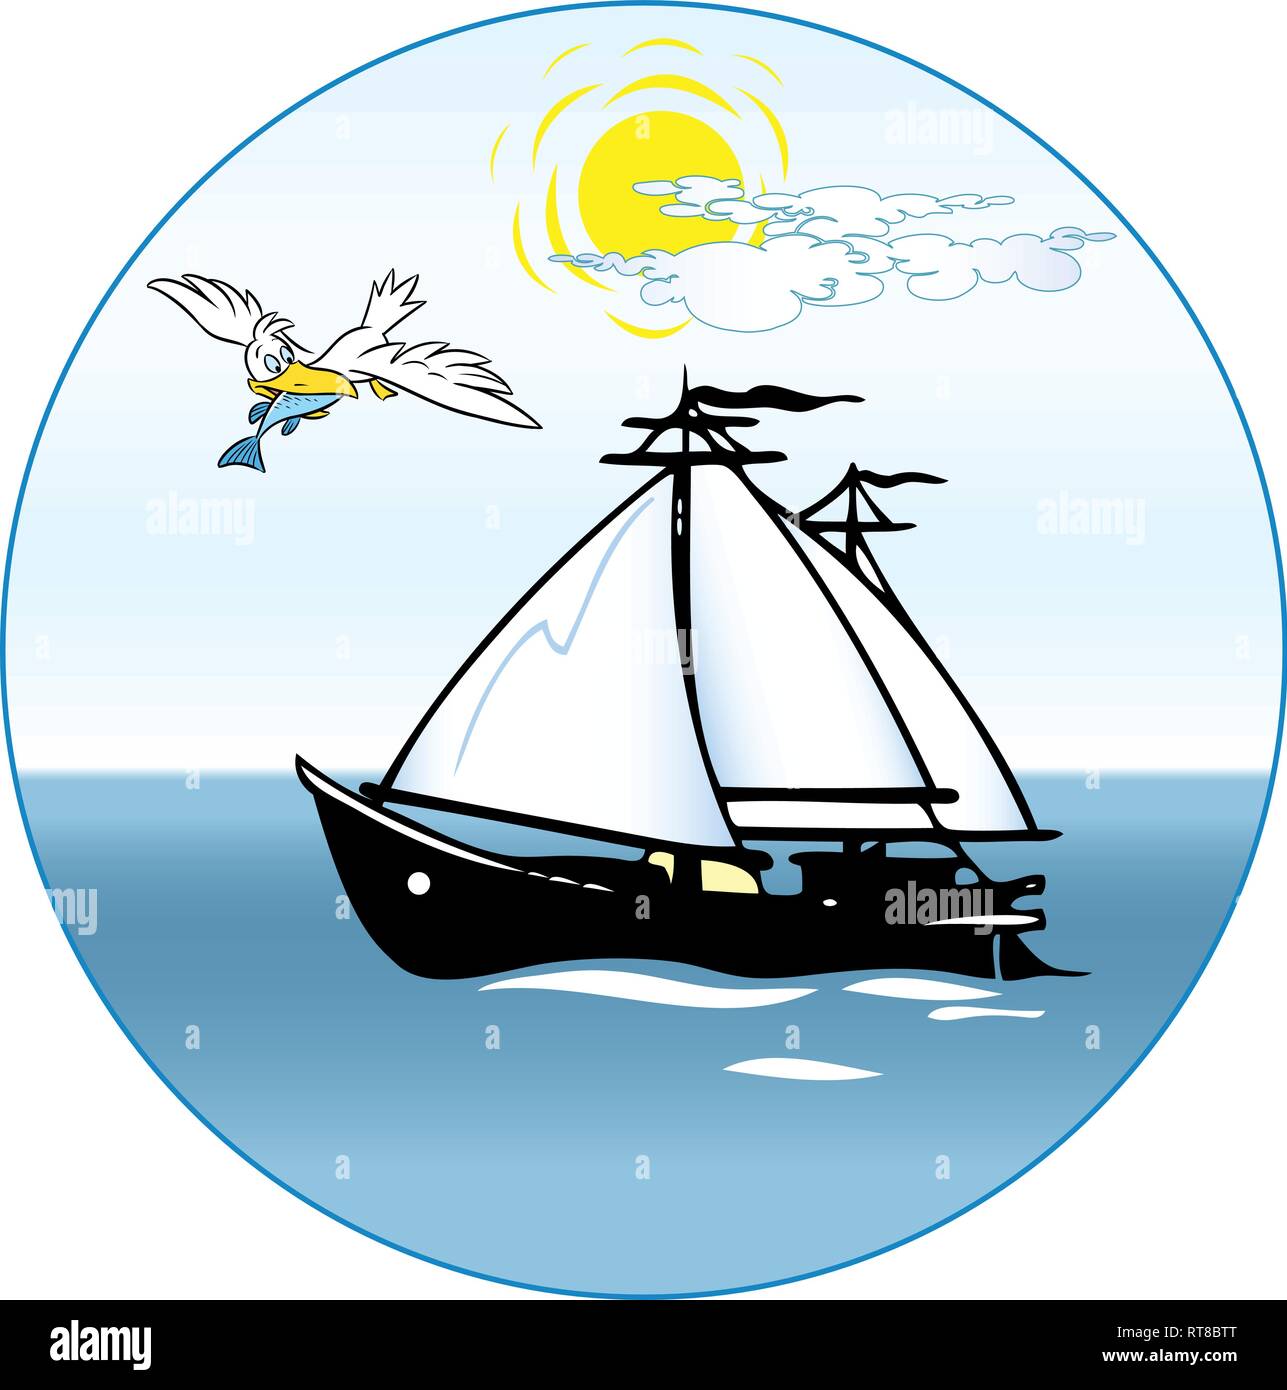 Dans l'illustration, une caricature de Bateau Bateau à voile va dans la mer, un grand oiseau vole à proximité avec les proies Illustration de Vecteur